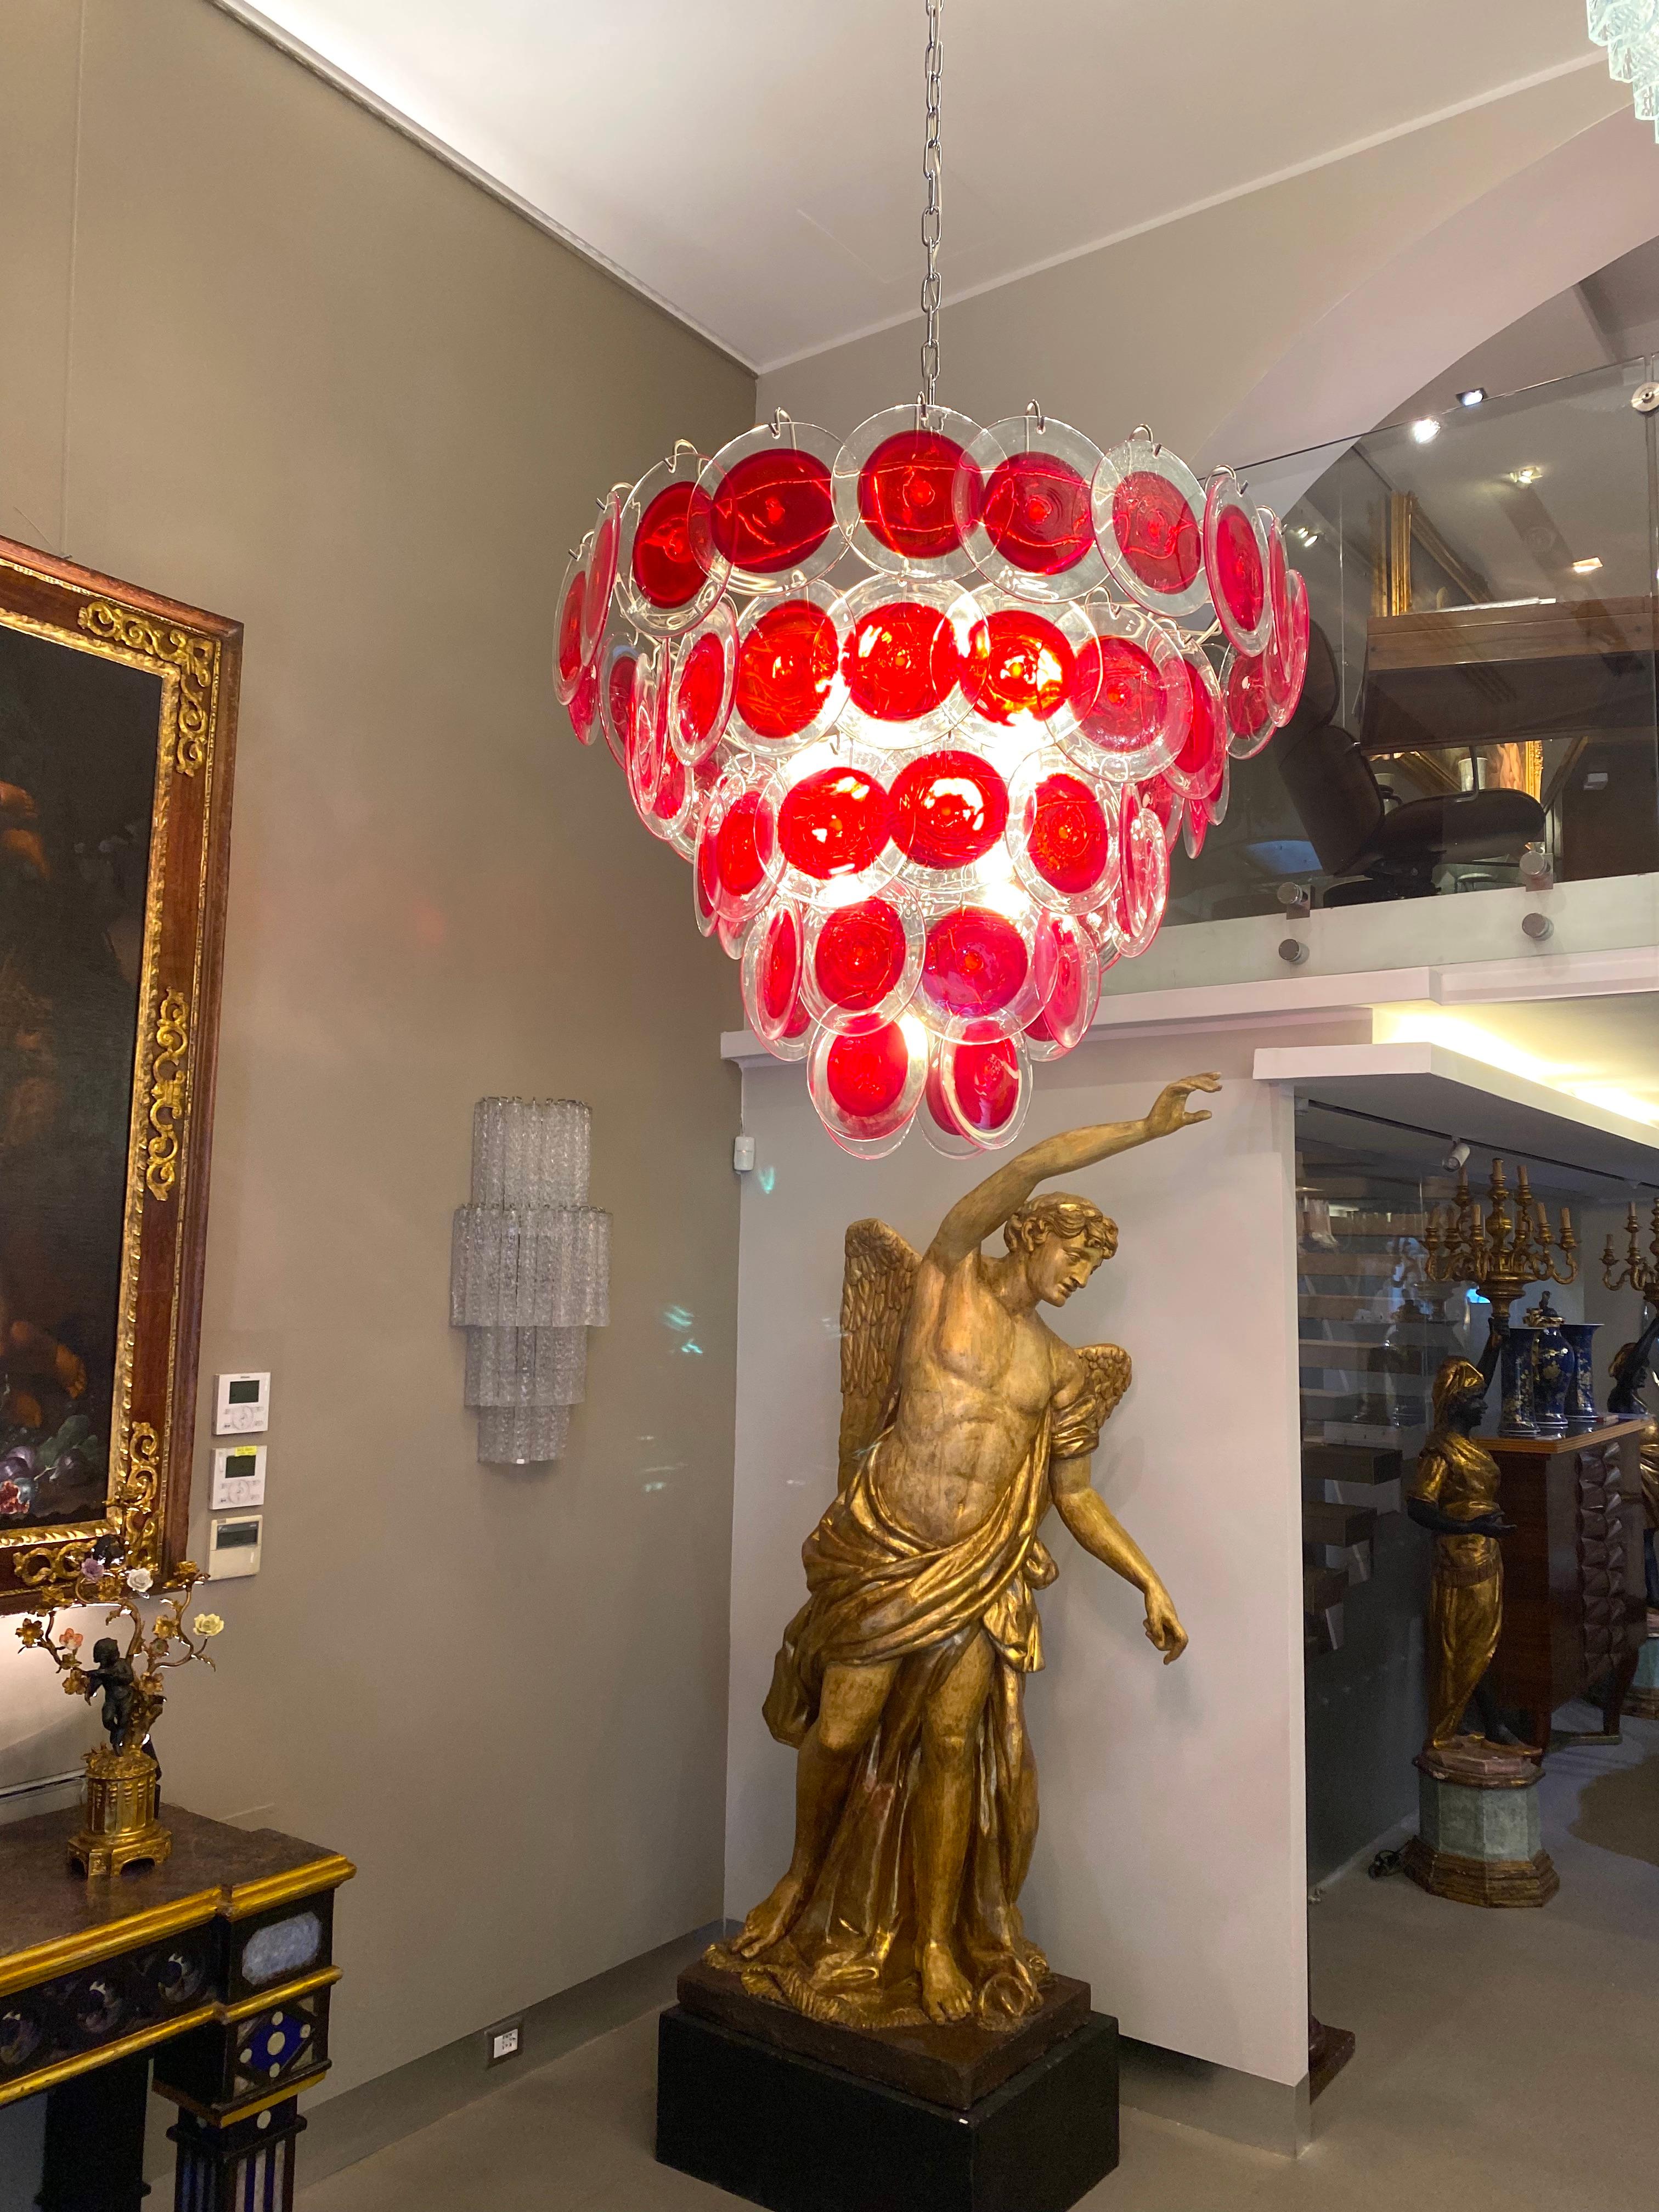 Roter Murano Glasscheiben-Kronleuchter in runder Form. 
Jeder Kronleuchter besteht aus 50 roten Scheiben aus kostbarem Murano-Glas, die auf fünf Ebenen angeordnet sind.
Sie können in verschiedenen Größen, Ausführungen und Glasfarben angepasst